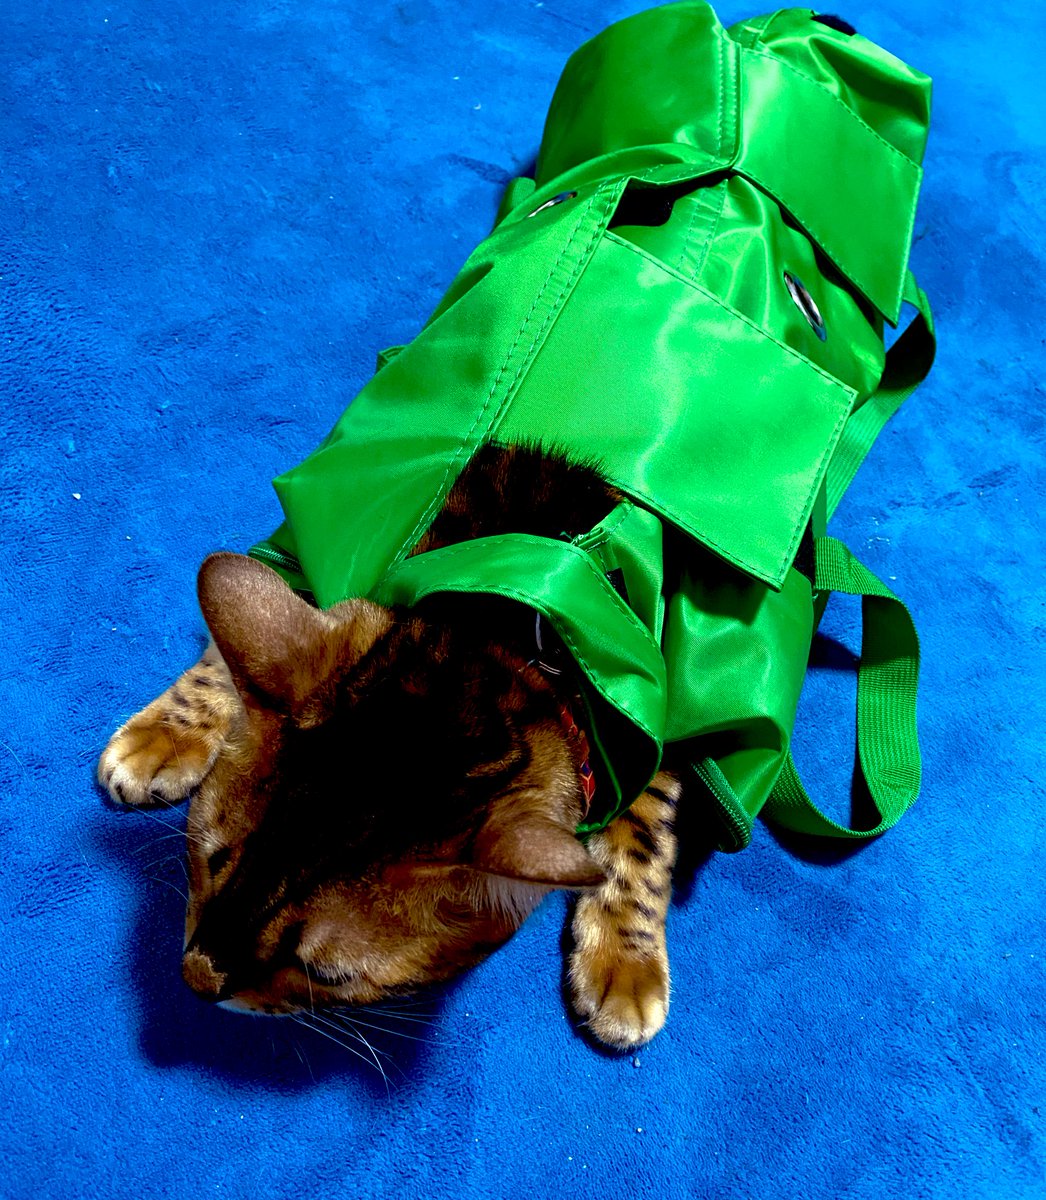 猫を無力化する袋」ことキャットグルーミングバッグが便利すぎ！爪切りが苦手な猫さんと、ケアする飼い主さんに届け！ - Togetter